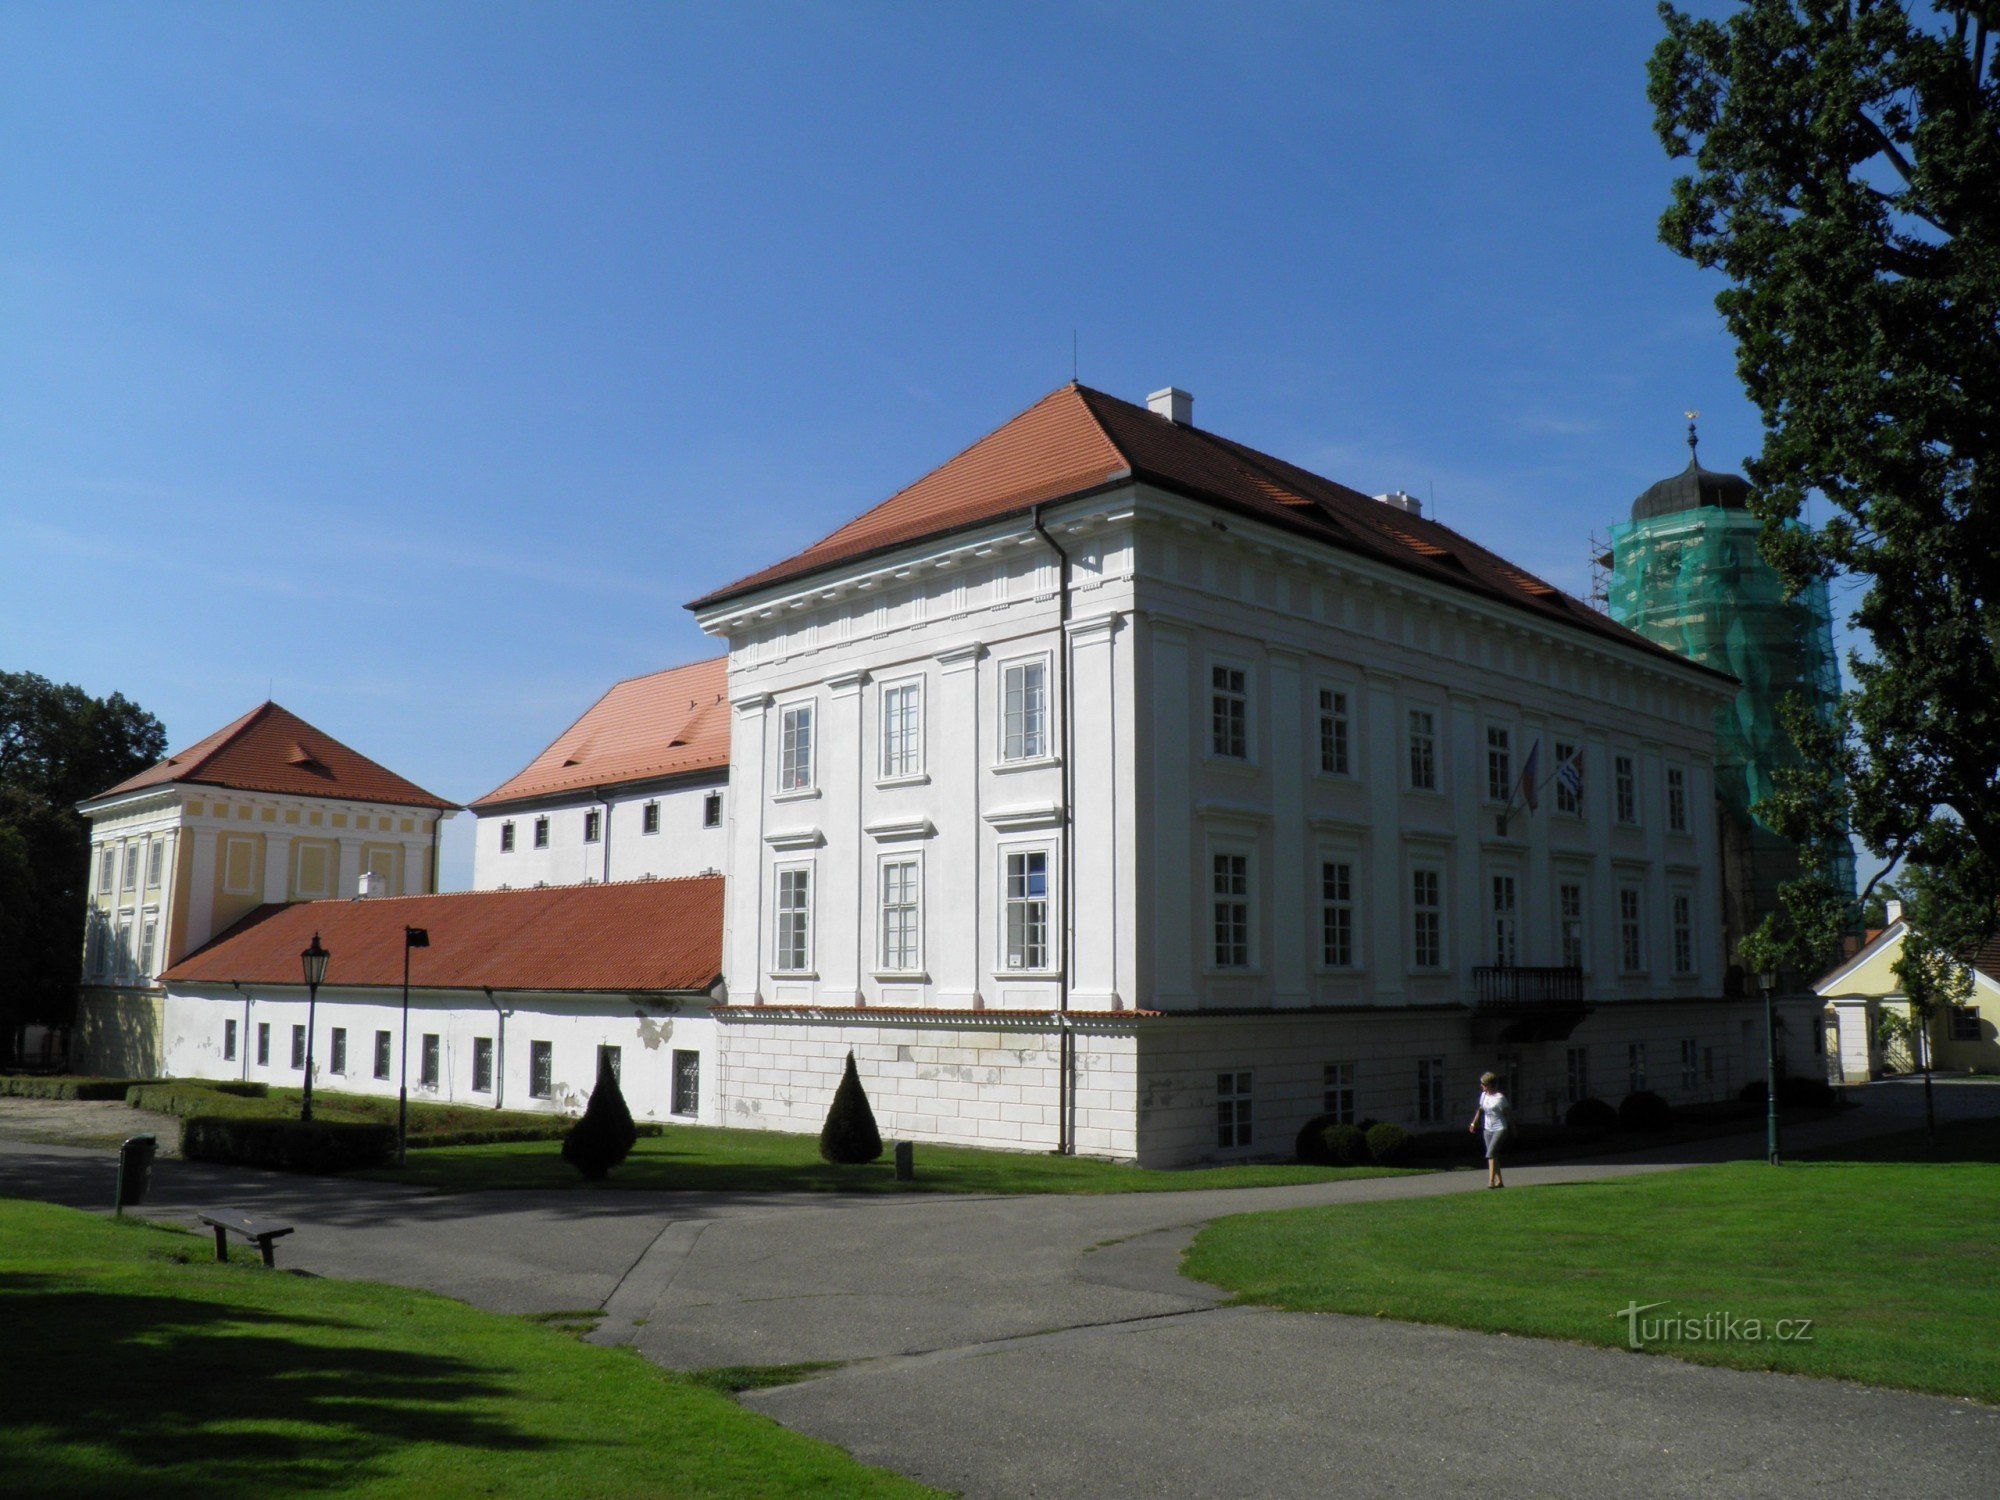 Κάστρο Vlašim και πάρκο του κάστρου